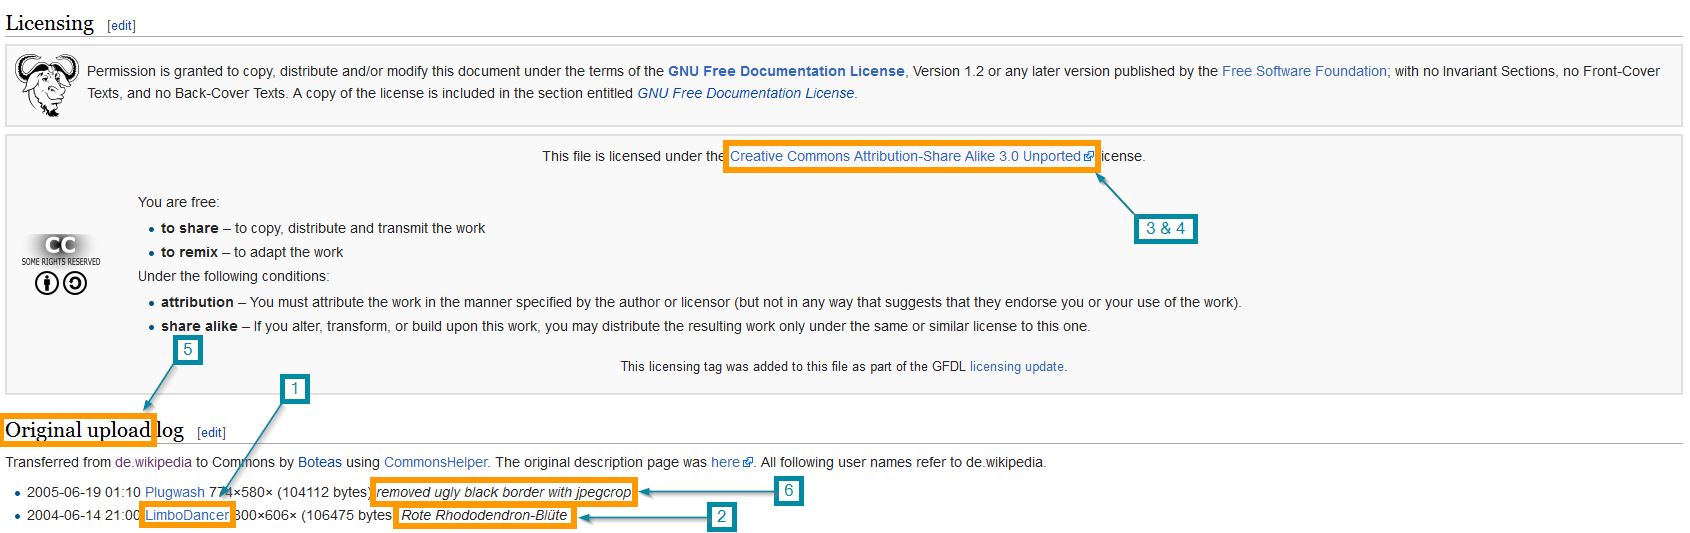 Beispiel CC Kennzeichnung in Wikipedia.jpg